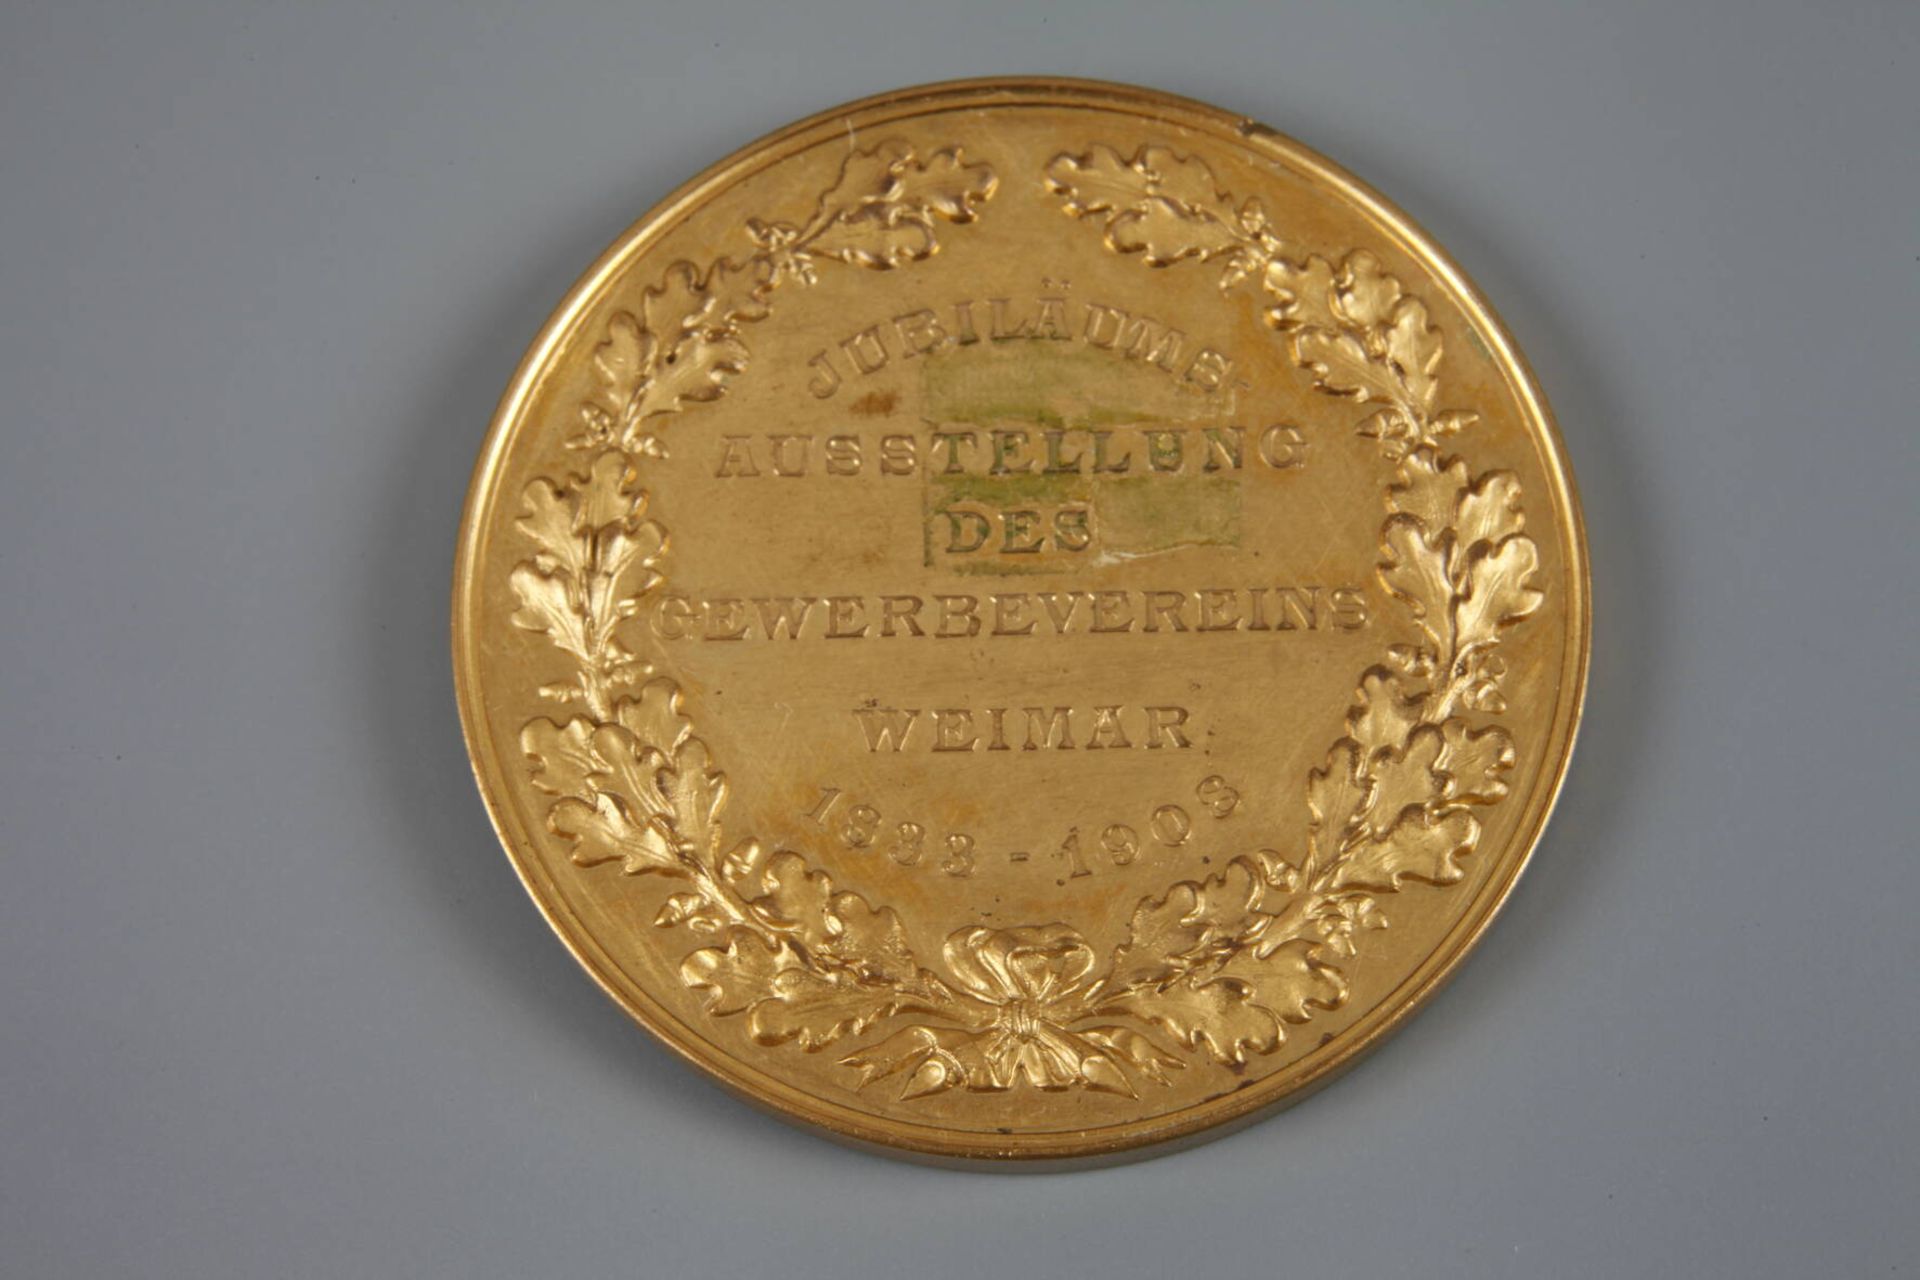 Medaille Gewerbeverein Weimar 1908Jubiläums-Ausstellung des Gewerbevereins Weimar 1833-1908, - Bild 2 aus 3